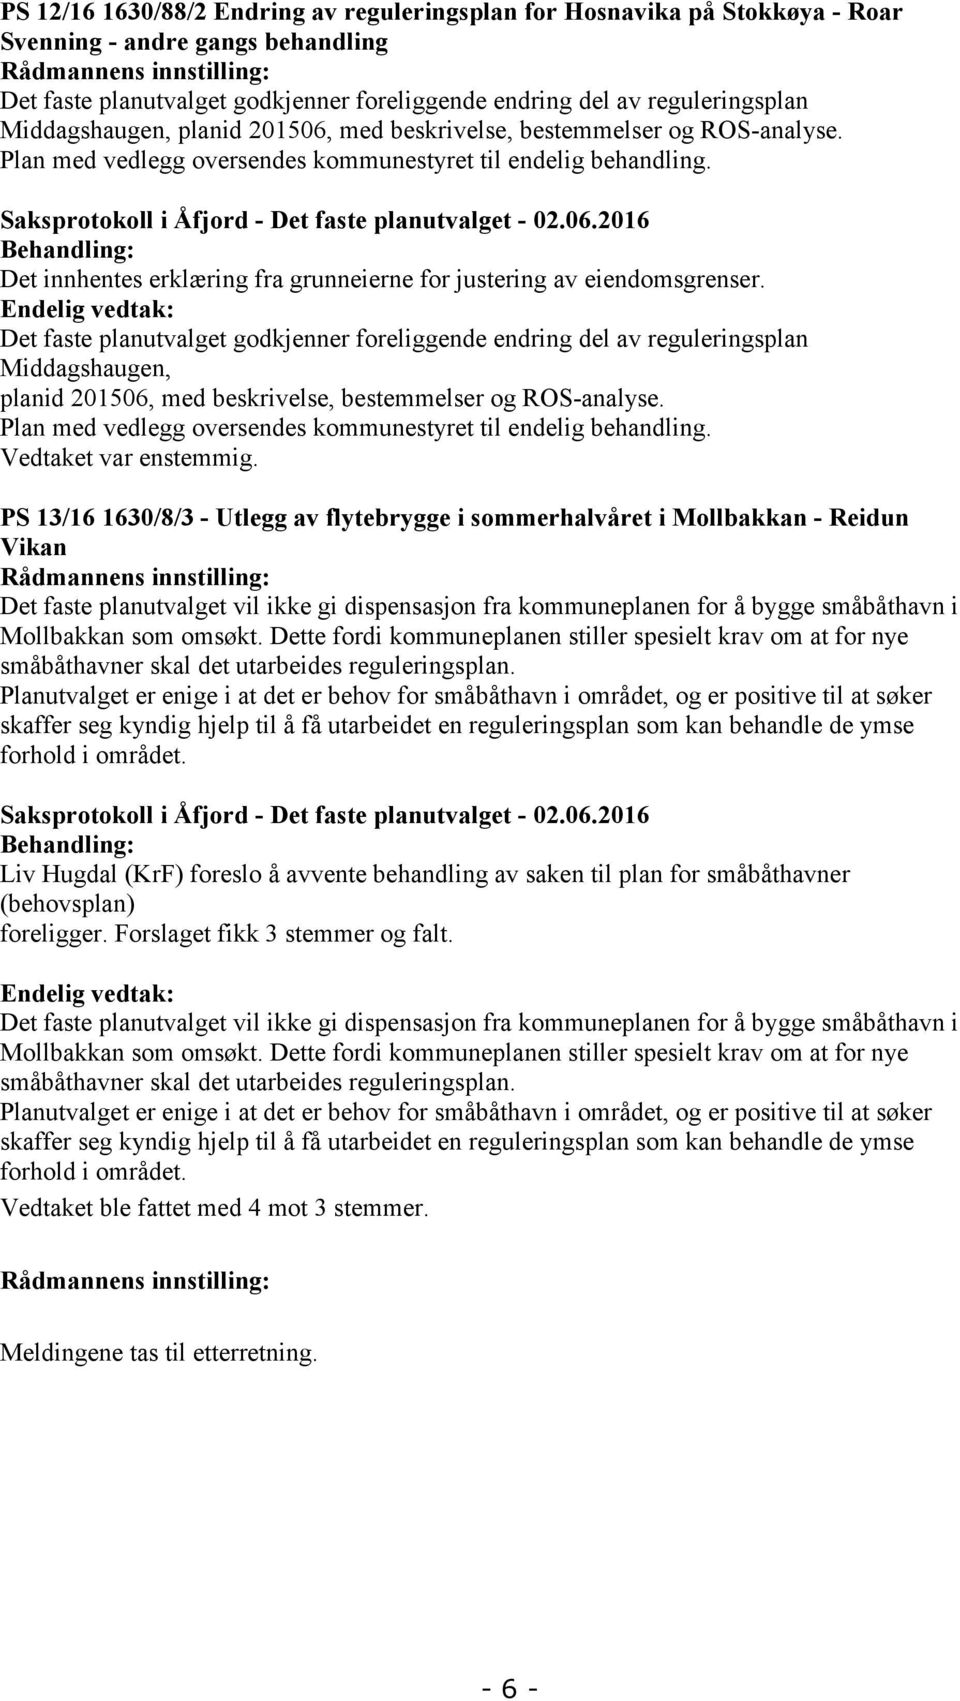 Saksprotokoll i Åfjord - Det faste planutvalget - 02.06.2016 Behandling: Det innhentes erklæring fra grunneierne for justering av eiendomsgrenser.